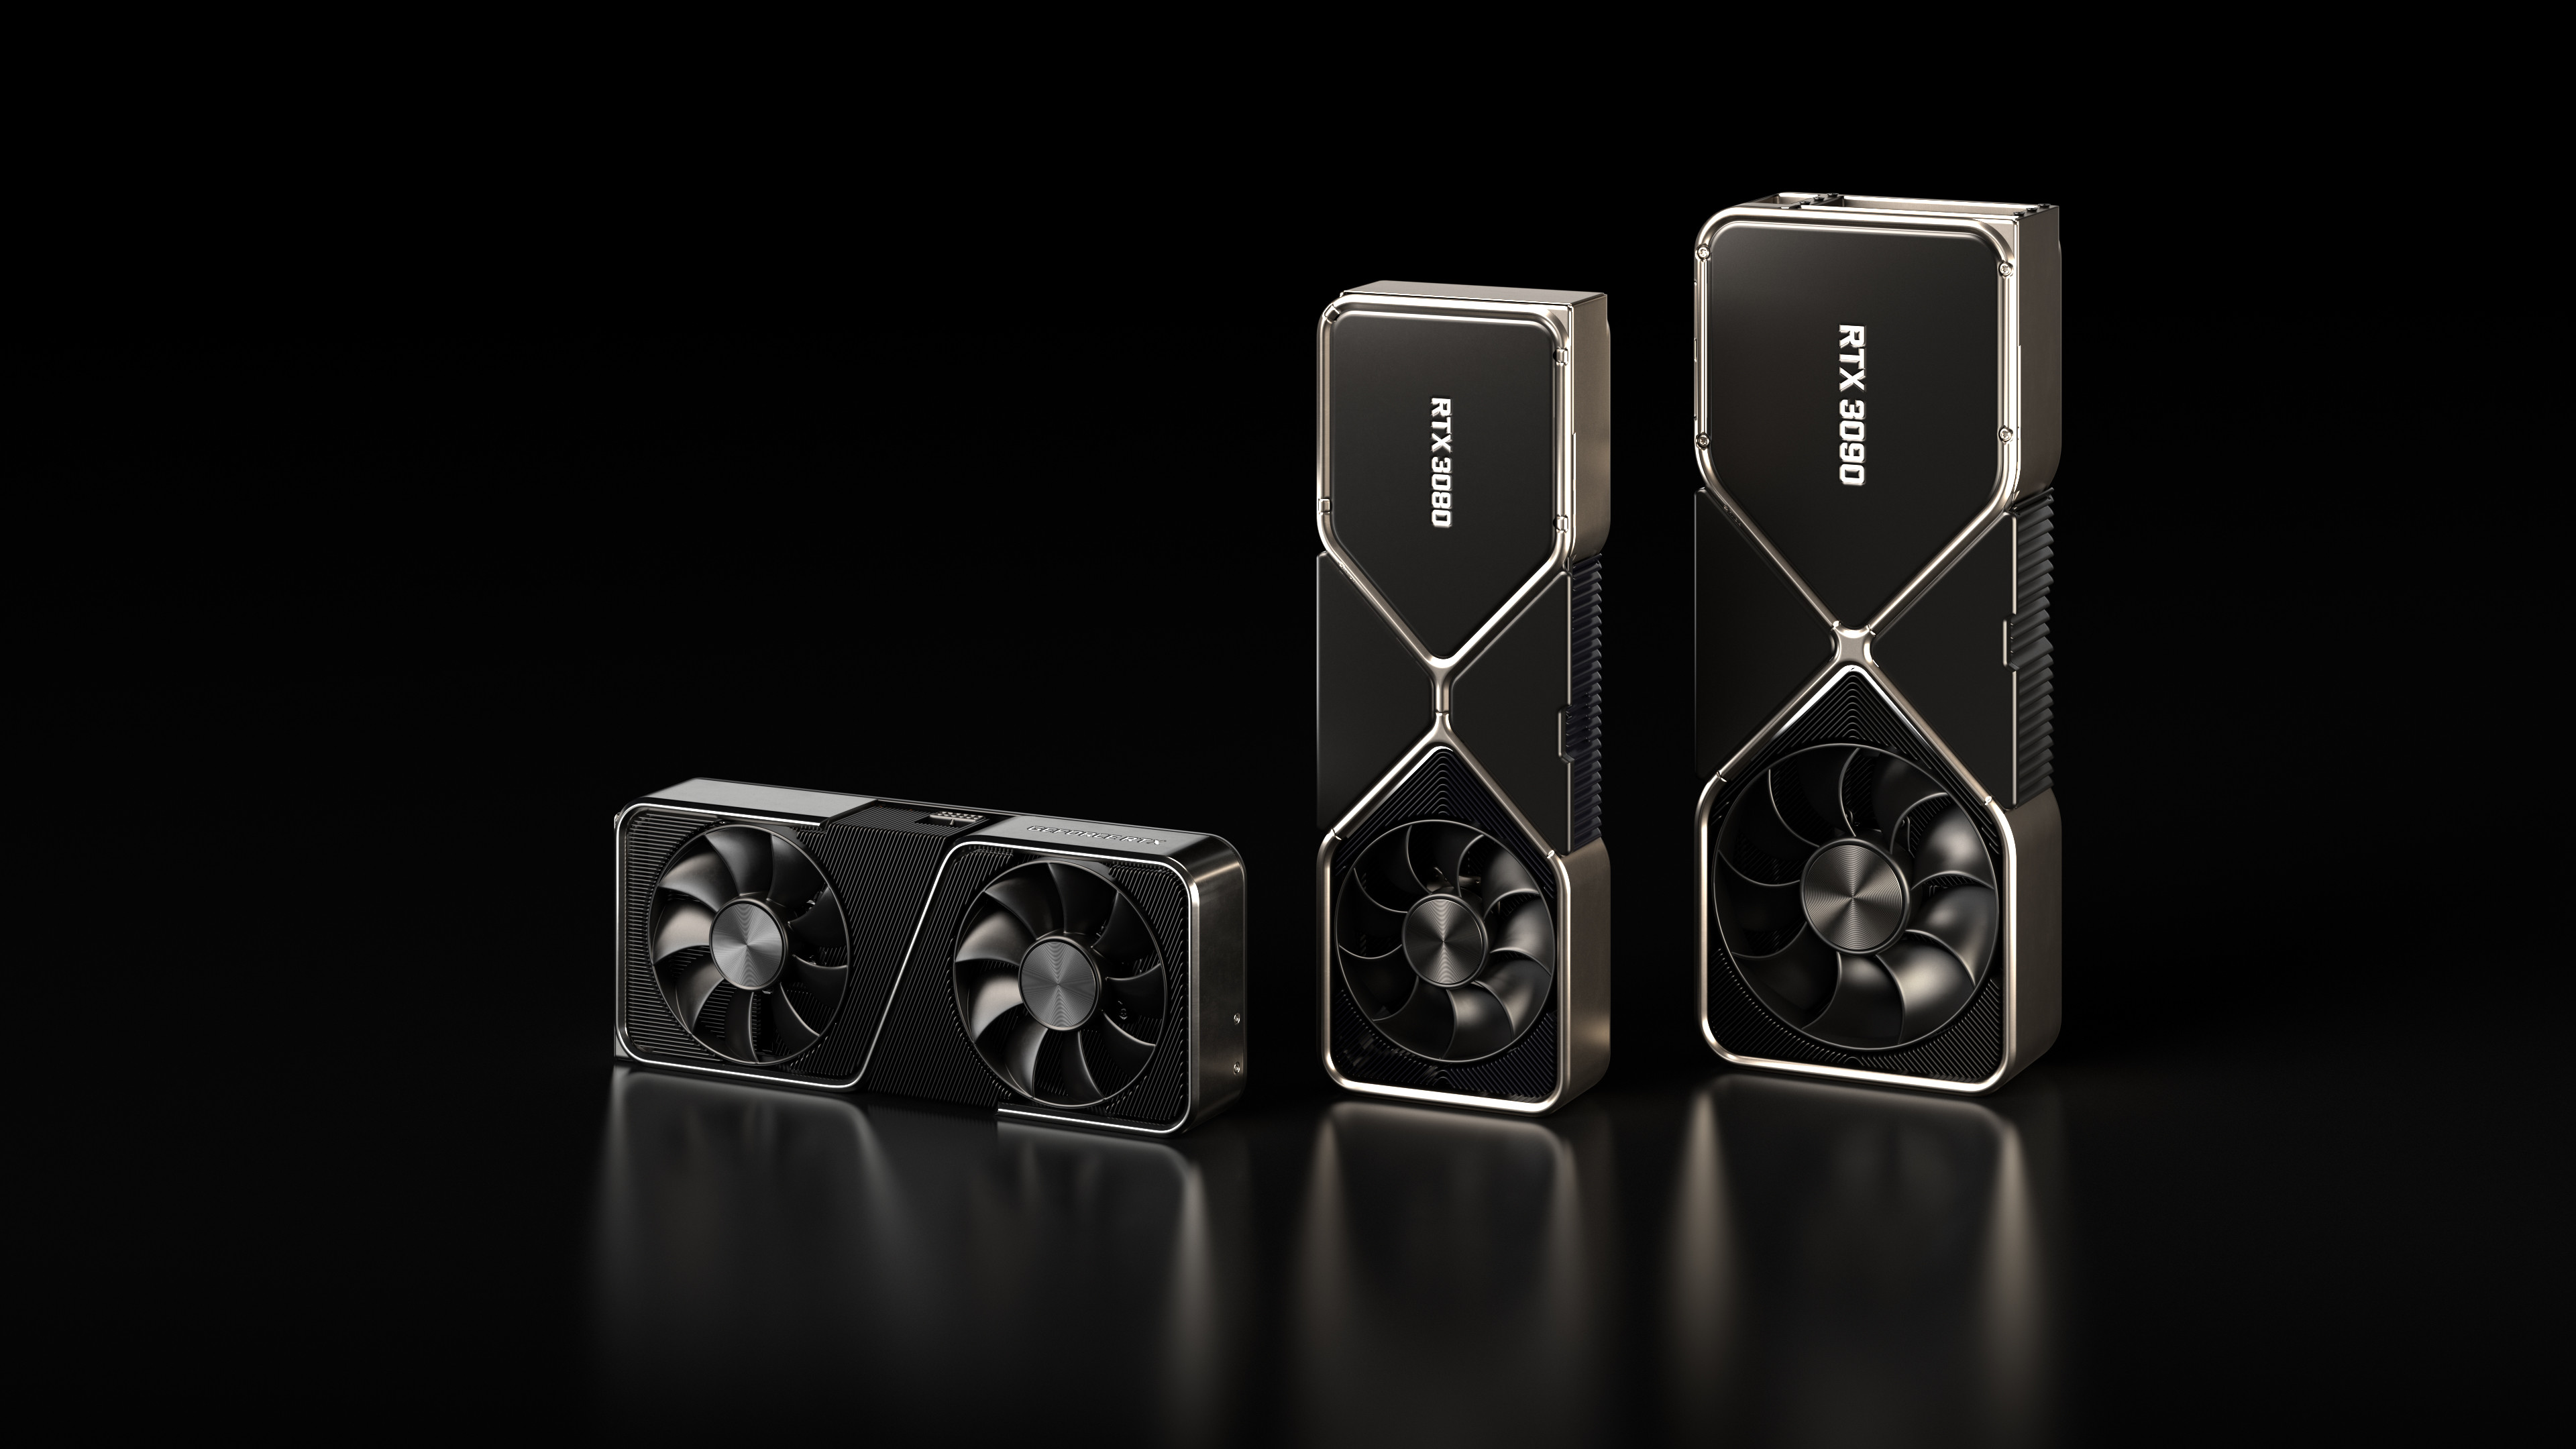 ลือ Nvidia จำการเปิดตัว GeForce RTX 40 Series ในเร็วๆ แต่น่าจะต้องรอกันหลายเดือนกว่าจะเริ่มวางขาย